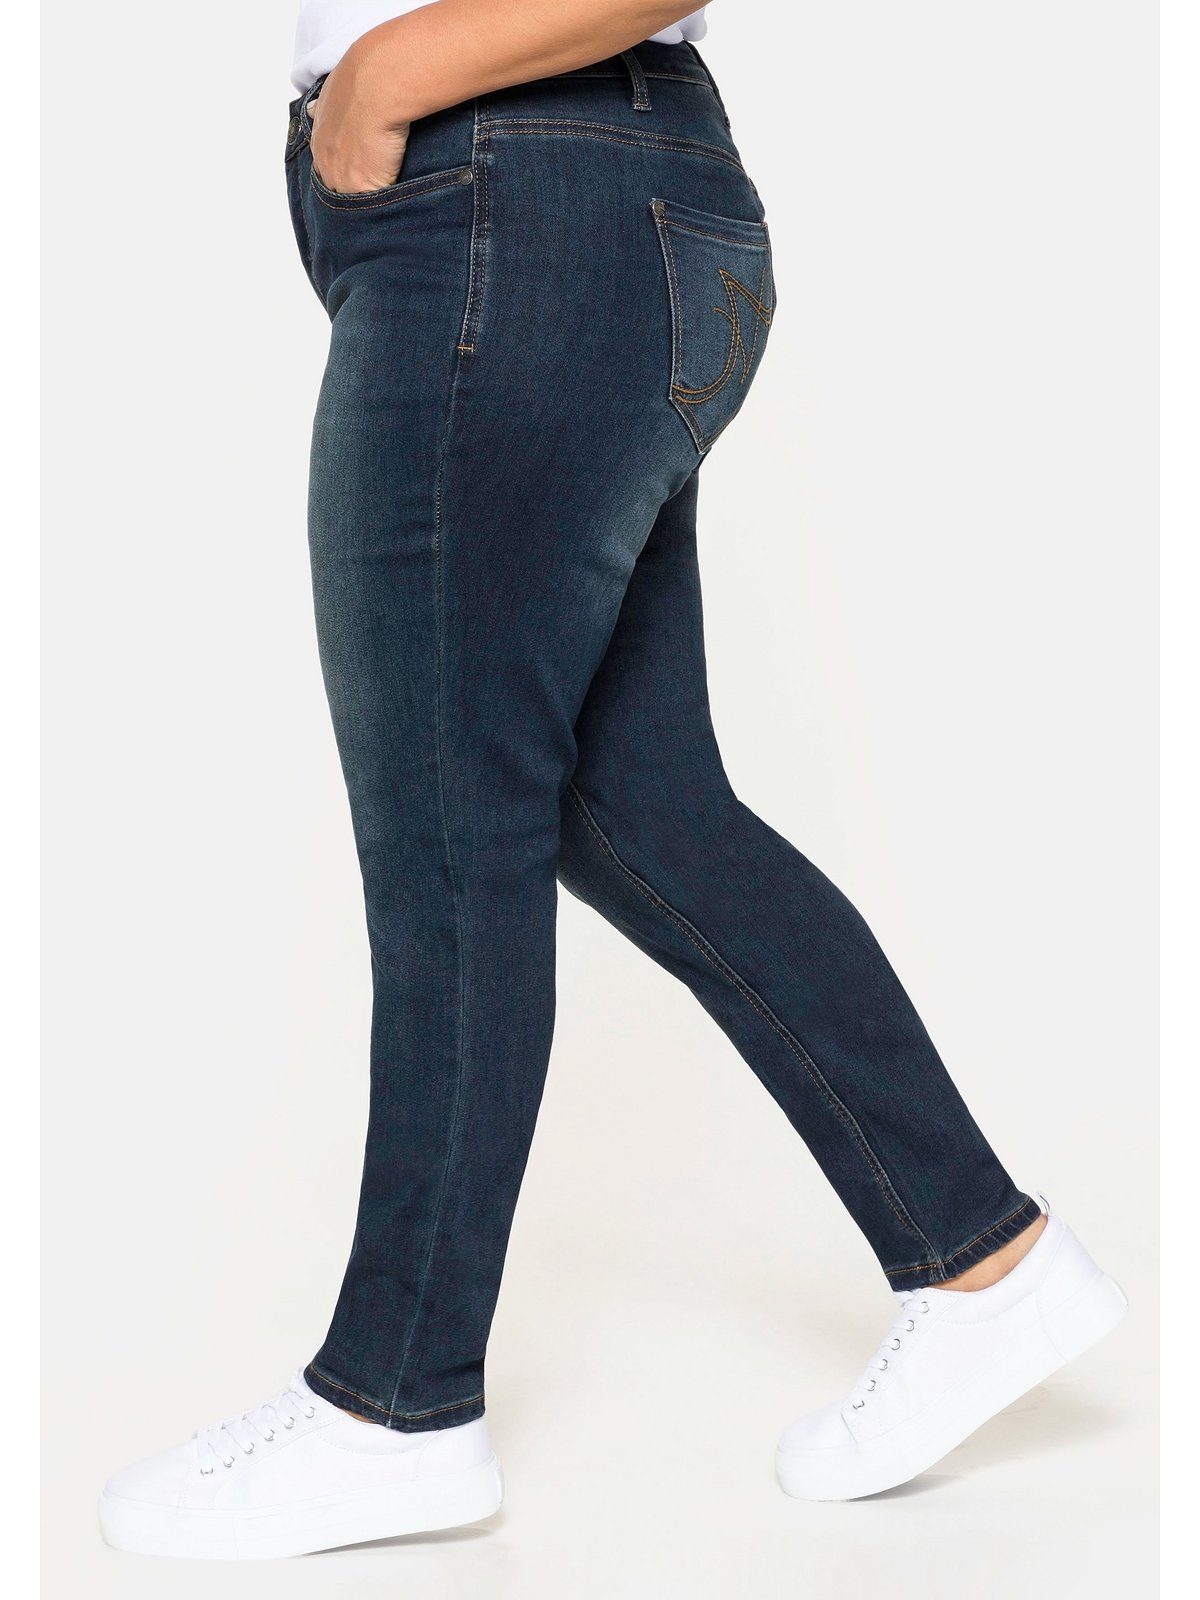 Coperni Jeans Aus Denim sarah in Blau Damen Bekleidung Jeans Jeans mit gerader Passform 